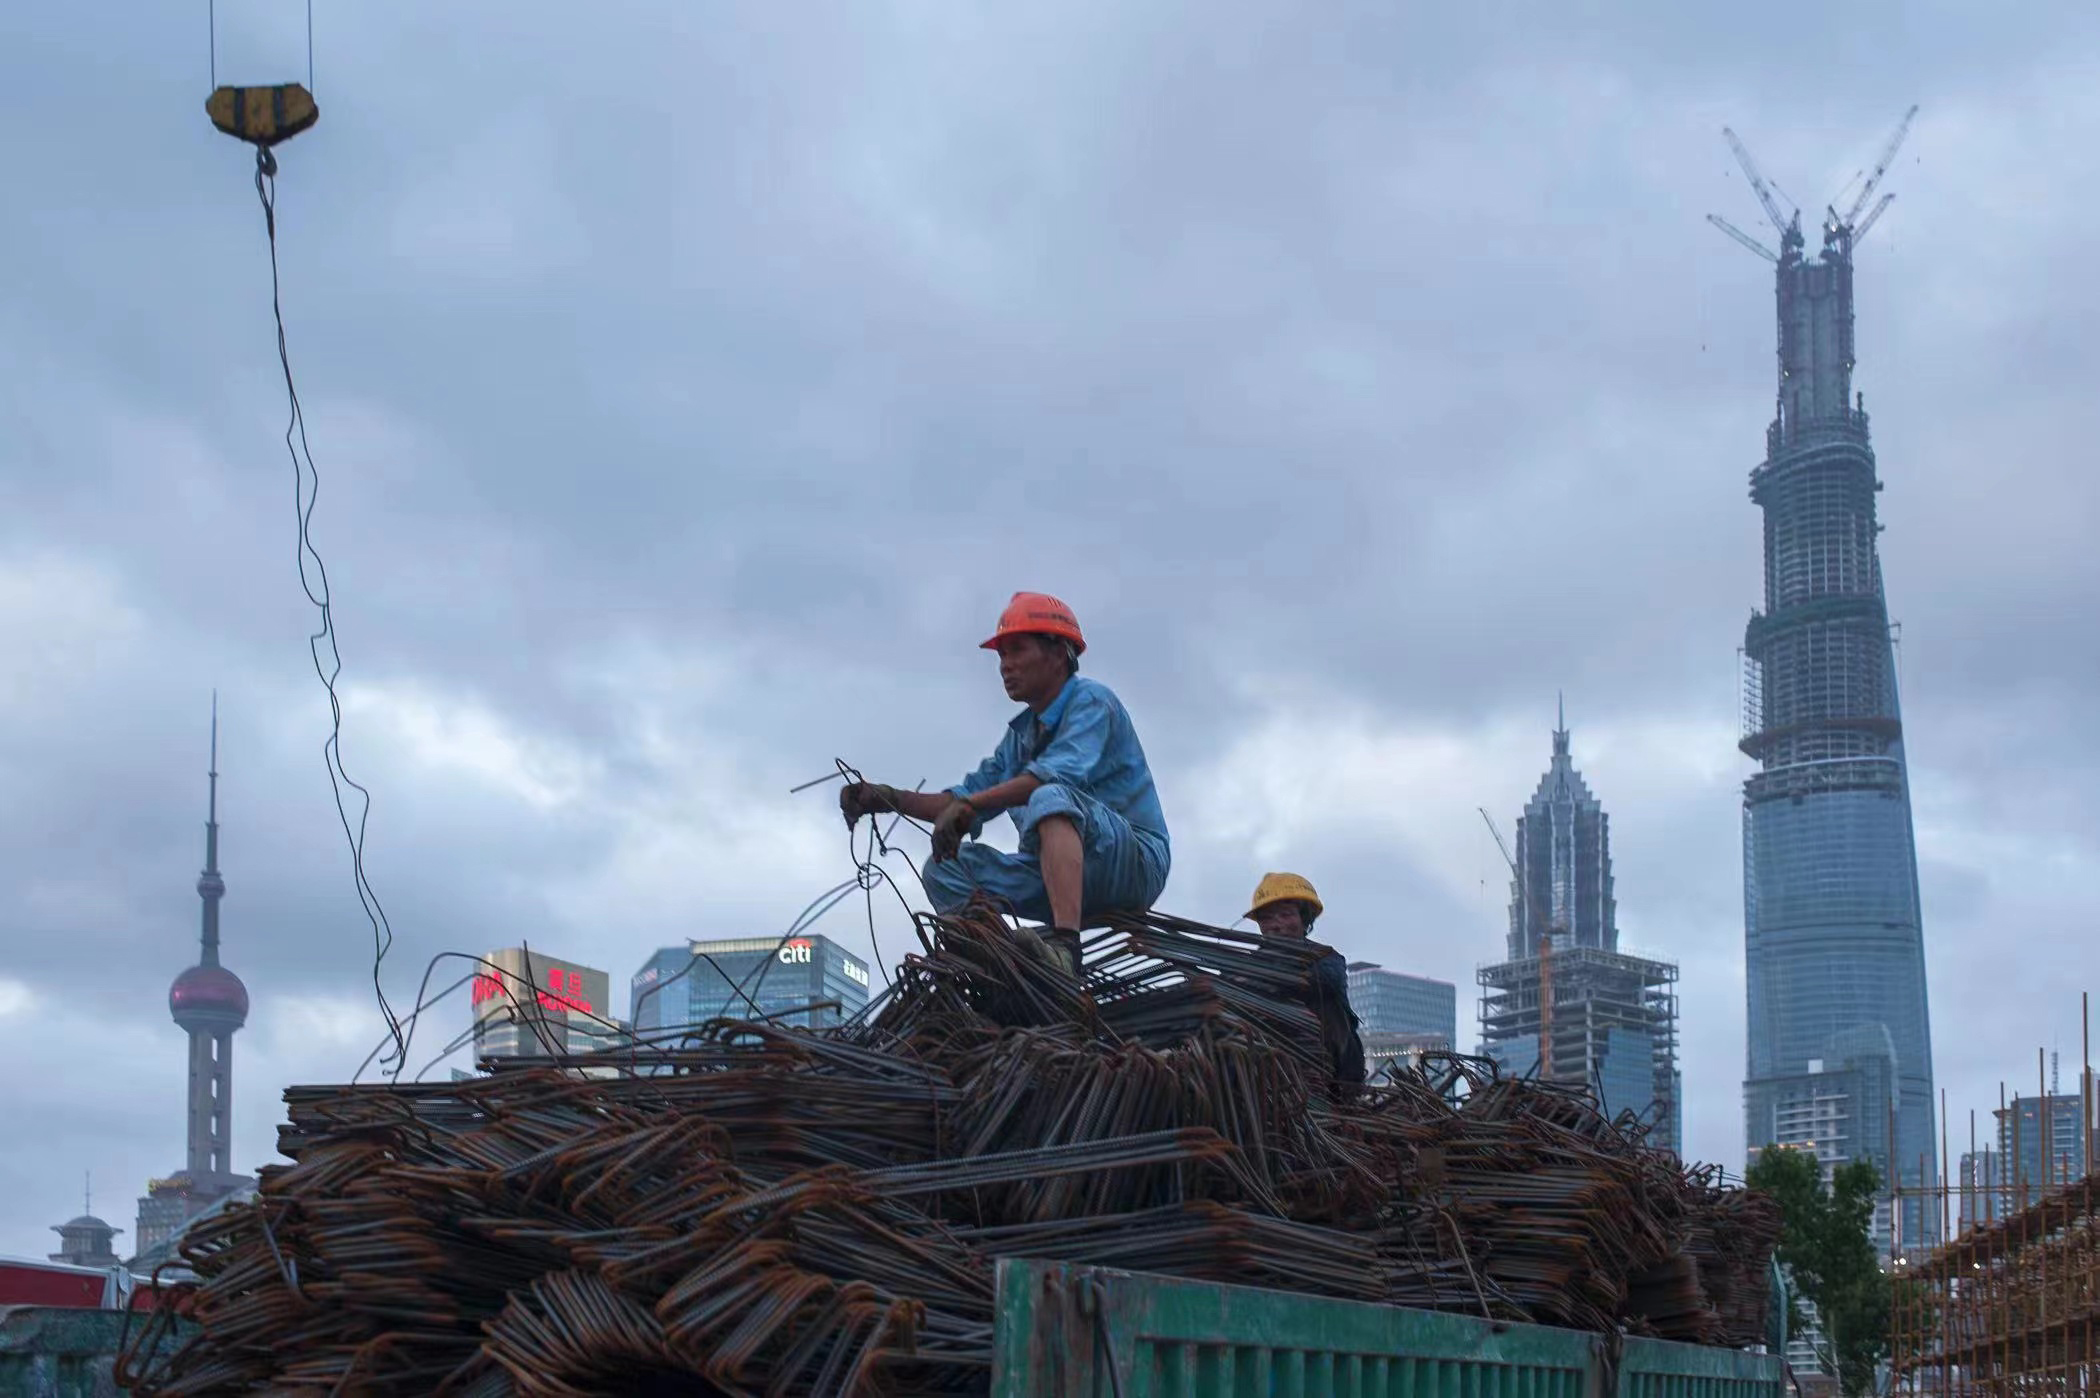 2013年7月13日,中国上海,豫园附近的一个建筑工地上,一名建筑工人坐在